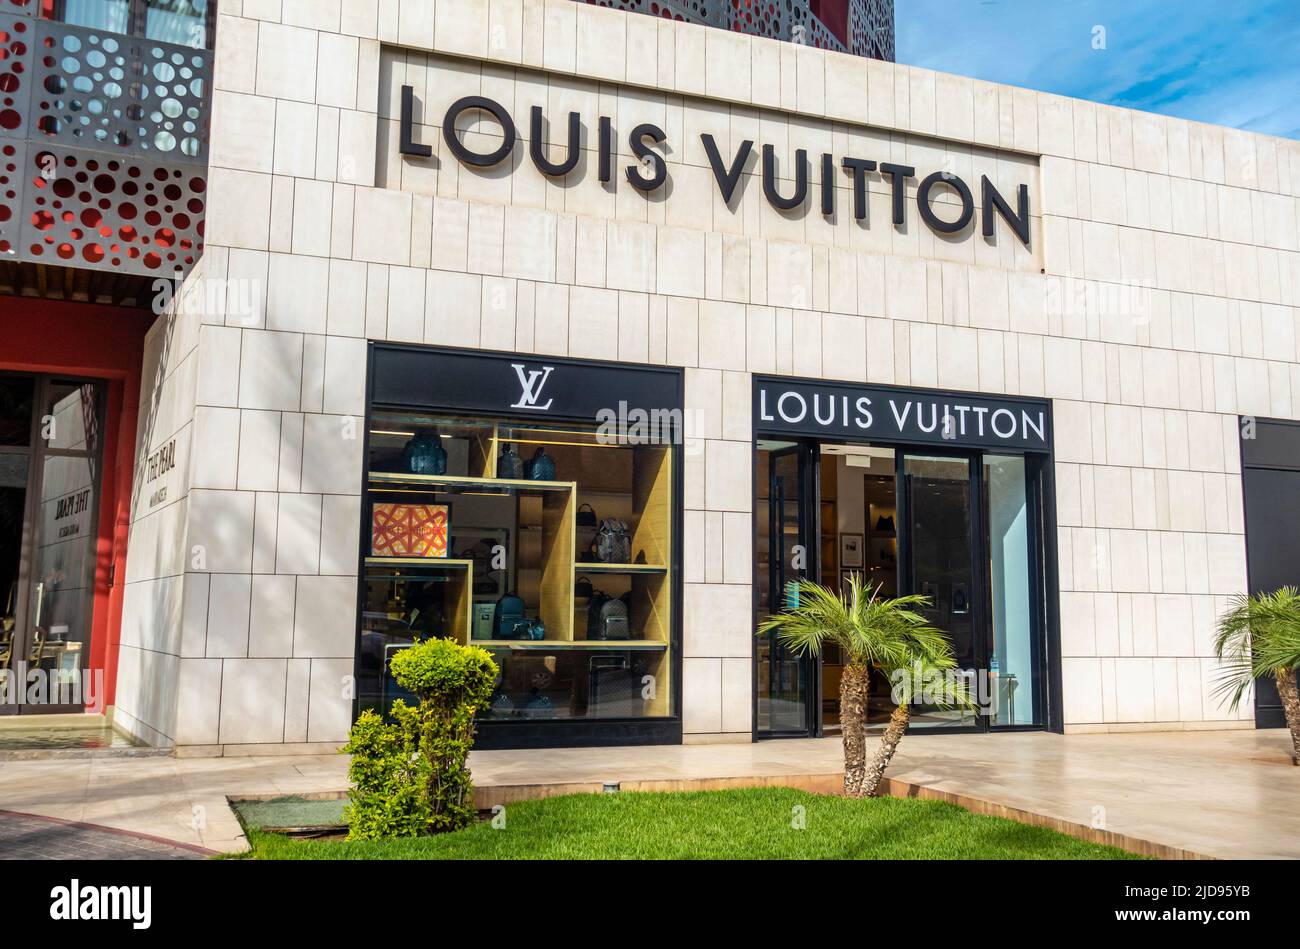 Louis Vuitton Sandton City Contact